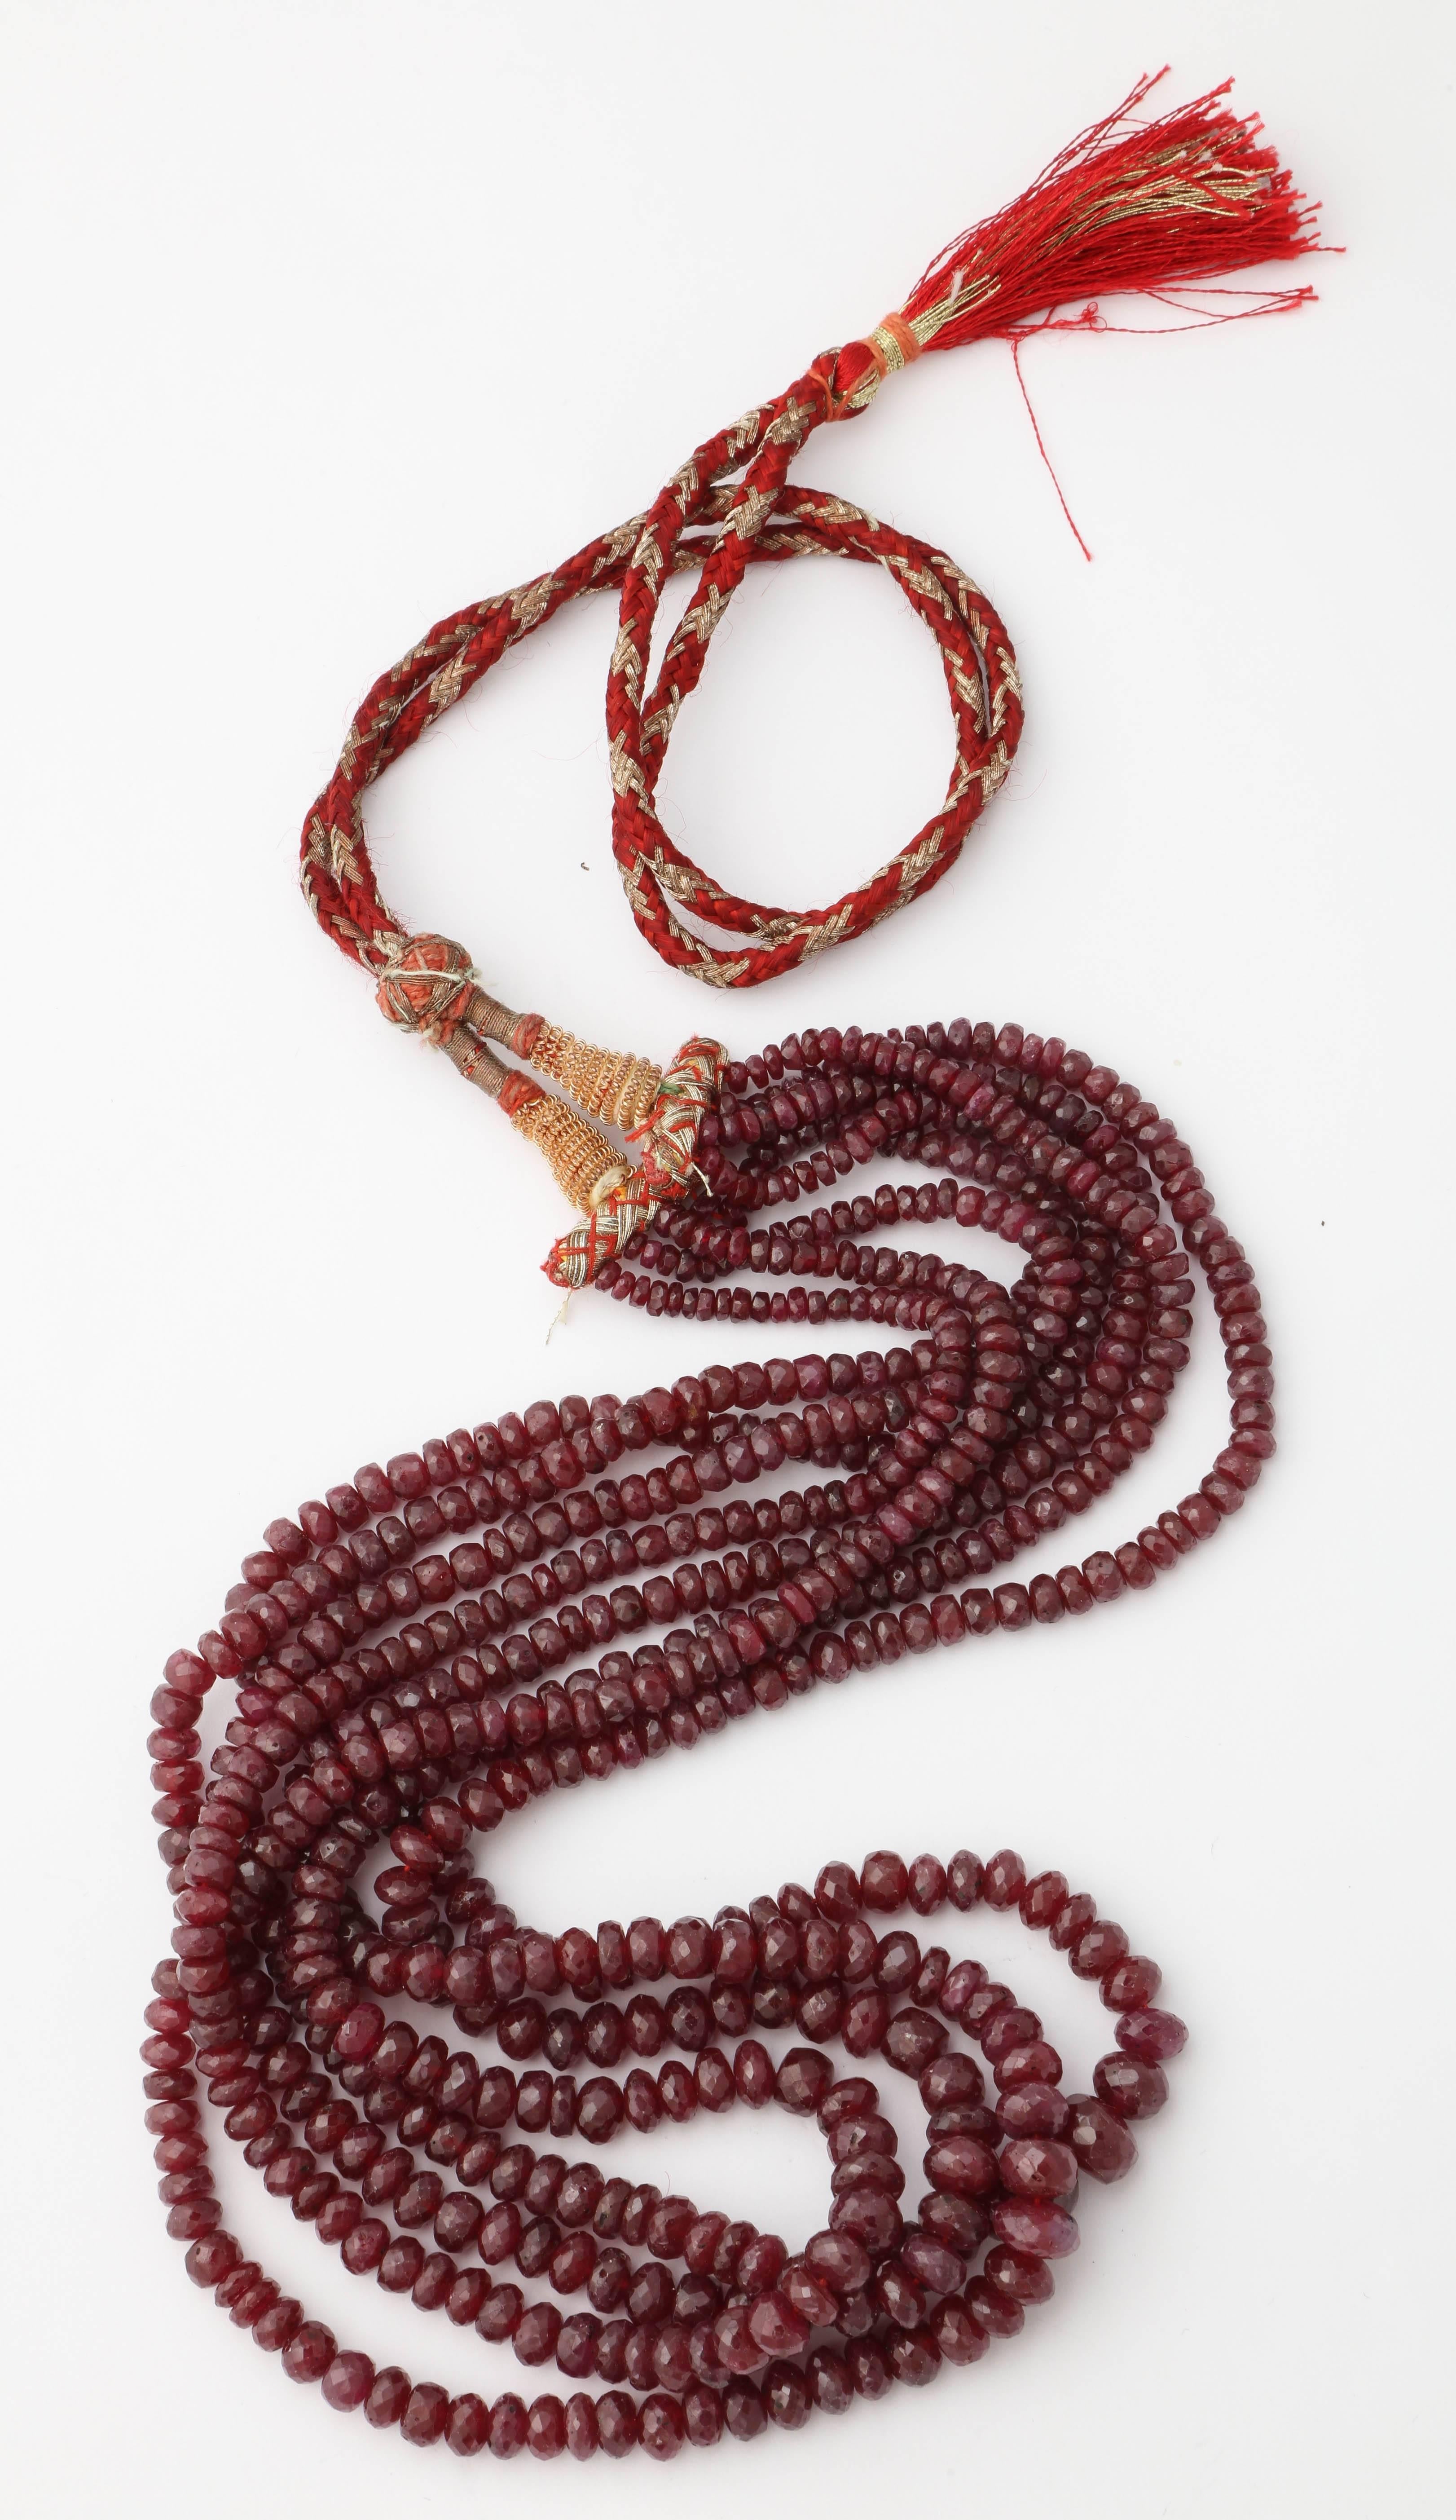 Abgestufte 4-strängige facettierte Rubin-Halskette mit origineller Aufhängung. Can modernisiert werden - aber wie schön ist es, eine moderne Tante Mame zu sein, ohne einen Sari tragen und sich in 9 Meter glänzenden Seidenstoff einwickeln zu müssen. 